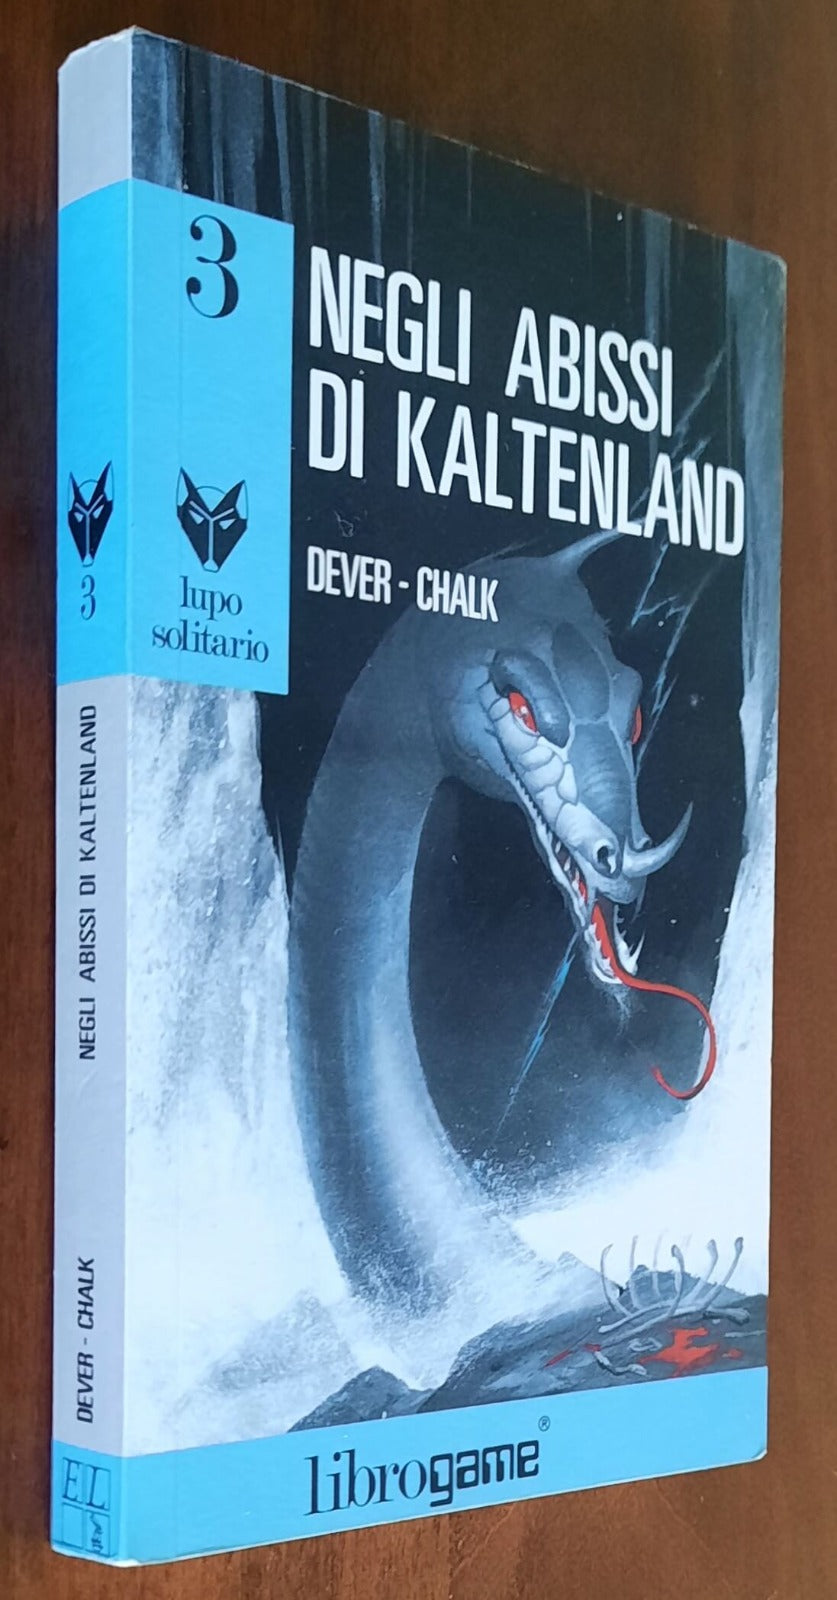 Librogame: Negli abissi di Kaltenland (Lupo solitario) - 1989